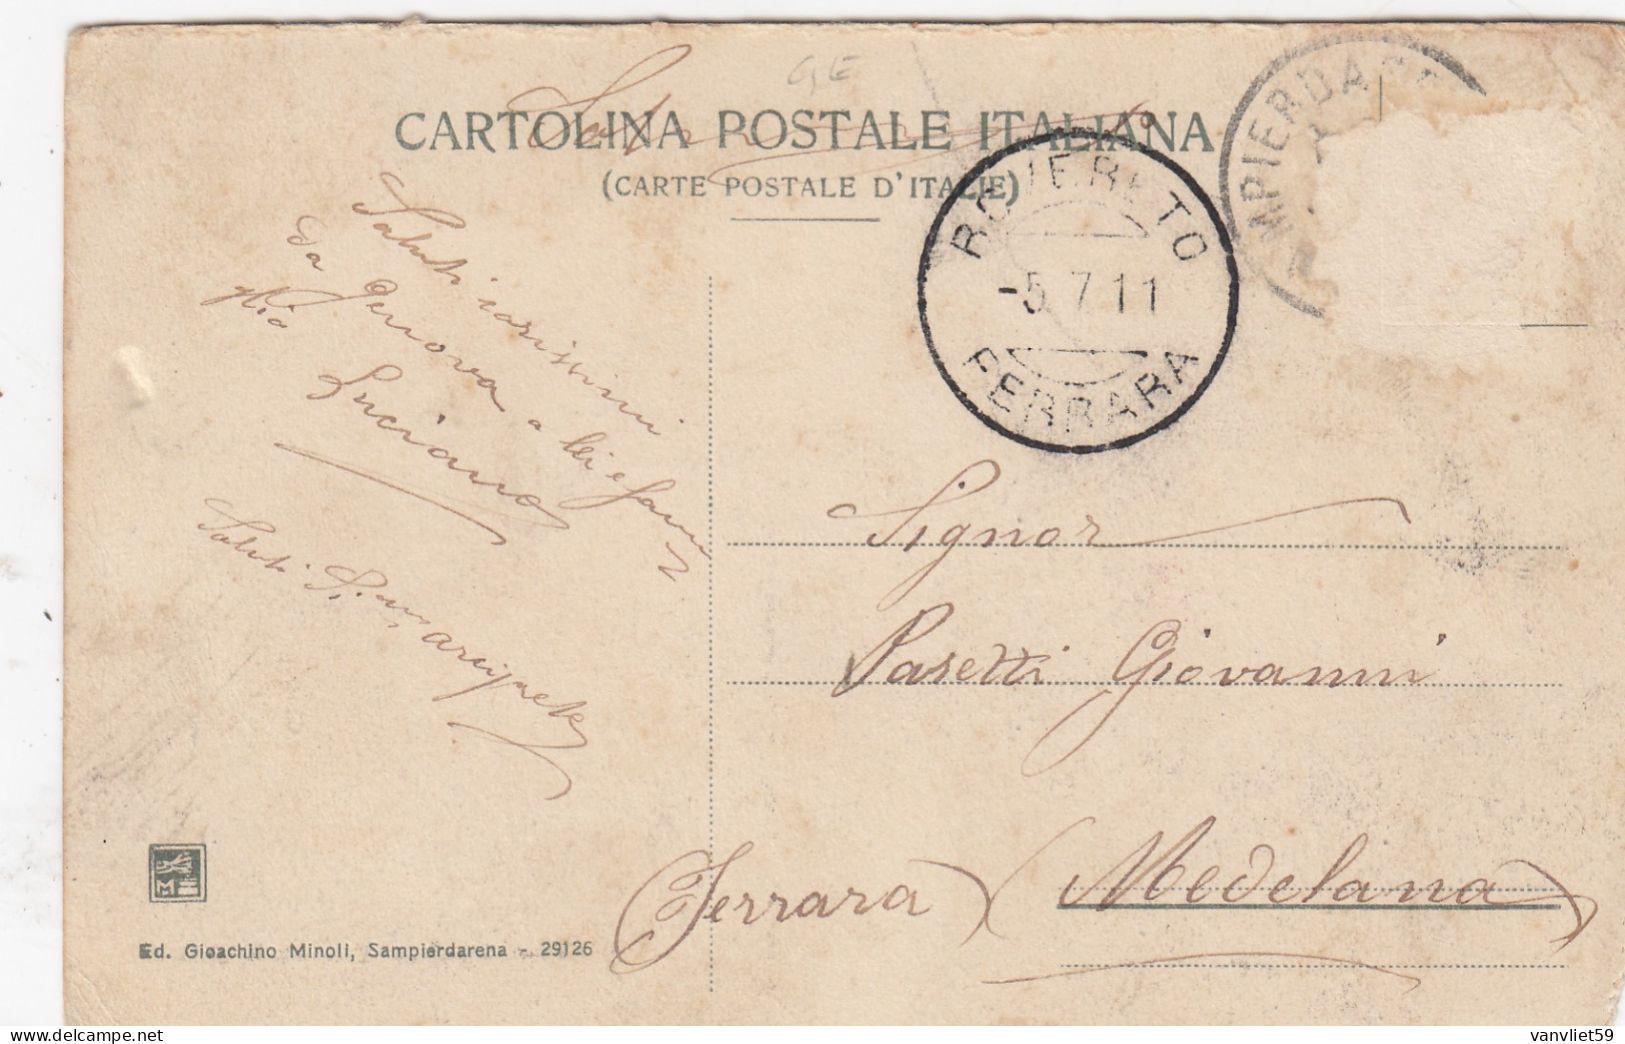 SAMPIERDARENA-GENOVA-CORSO VITTORIO EMANUELE-TRENO IN PRIMISSIMO PIAN-CARTOLINA  VIAGGIATA IL 5-7-1911 - Genova (Genoa)